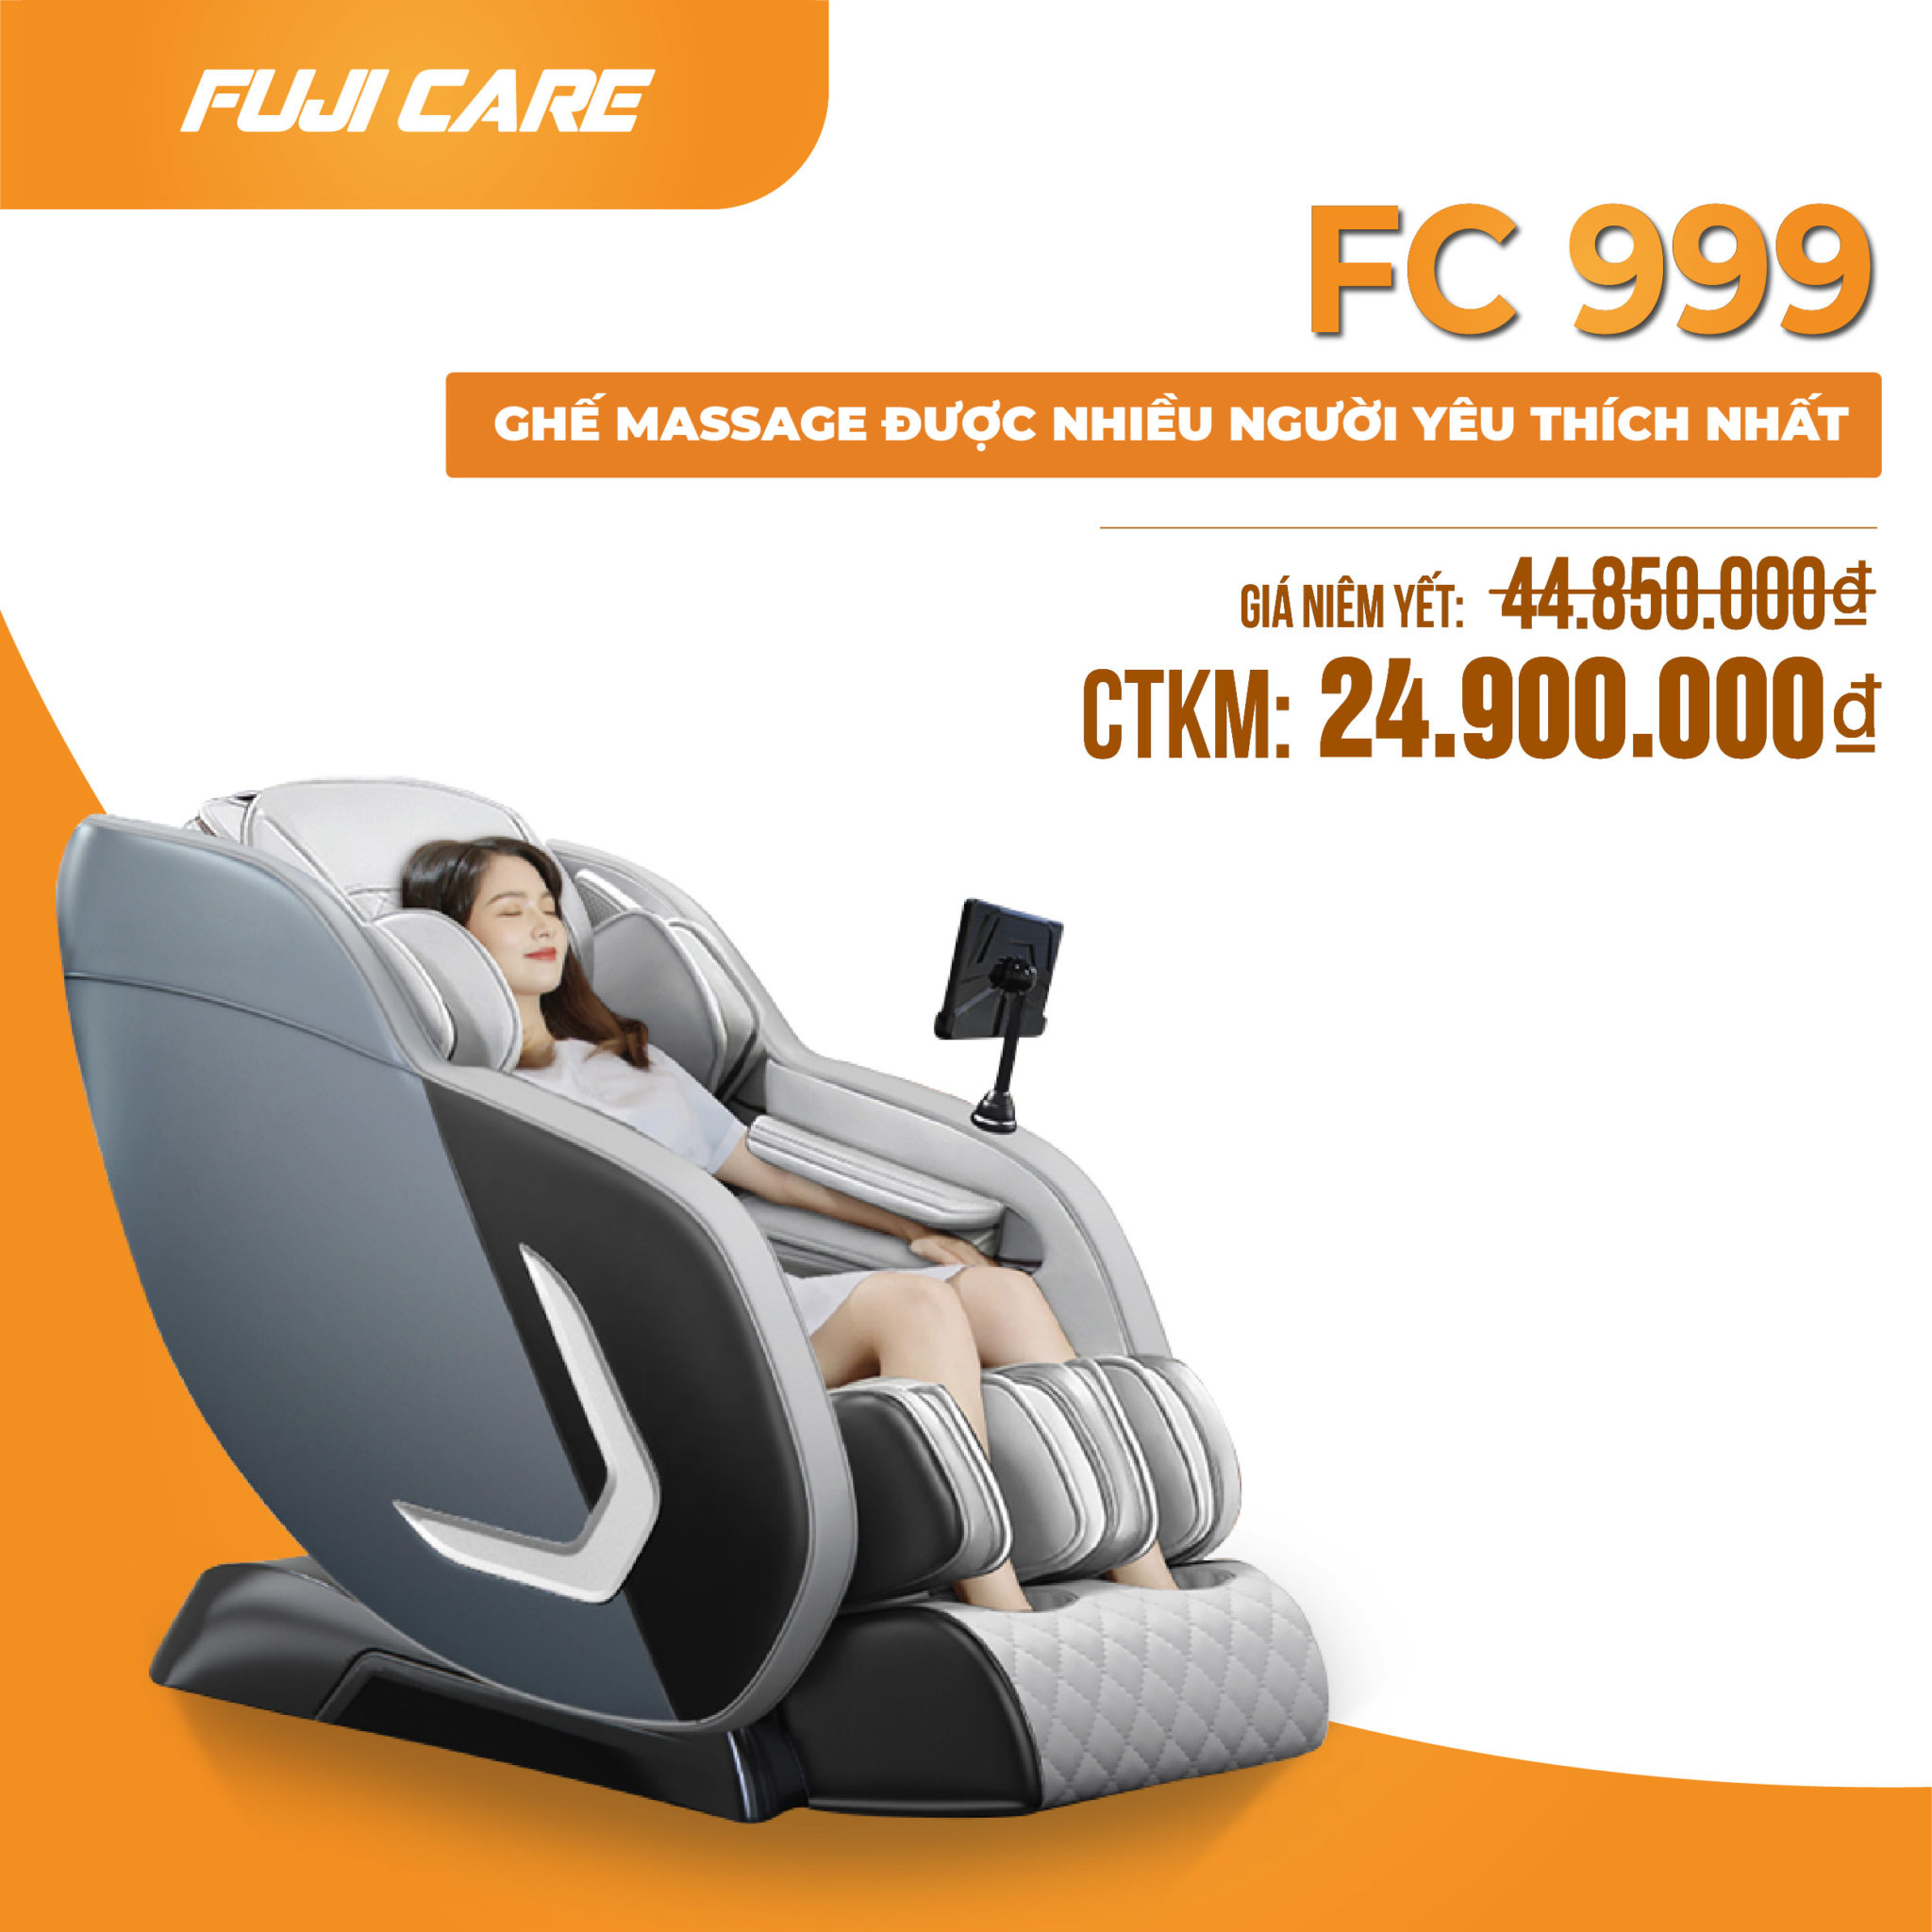 FC 999 - Ghế massage giá rẻ nhiều người dùng nhất